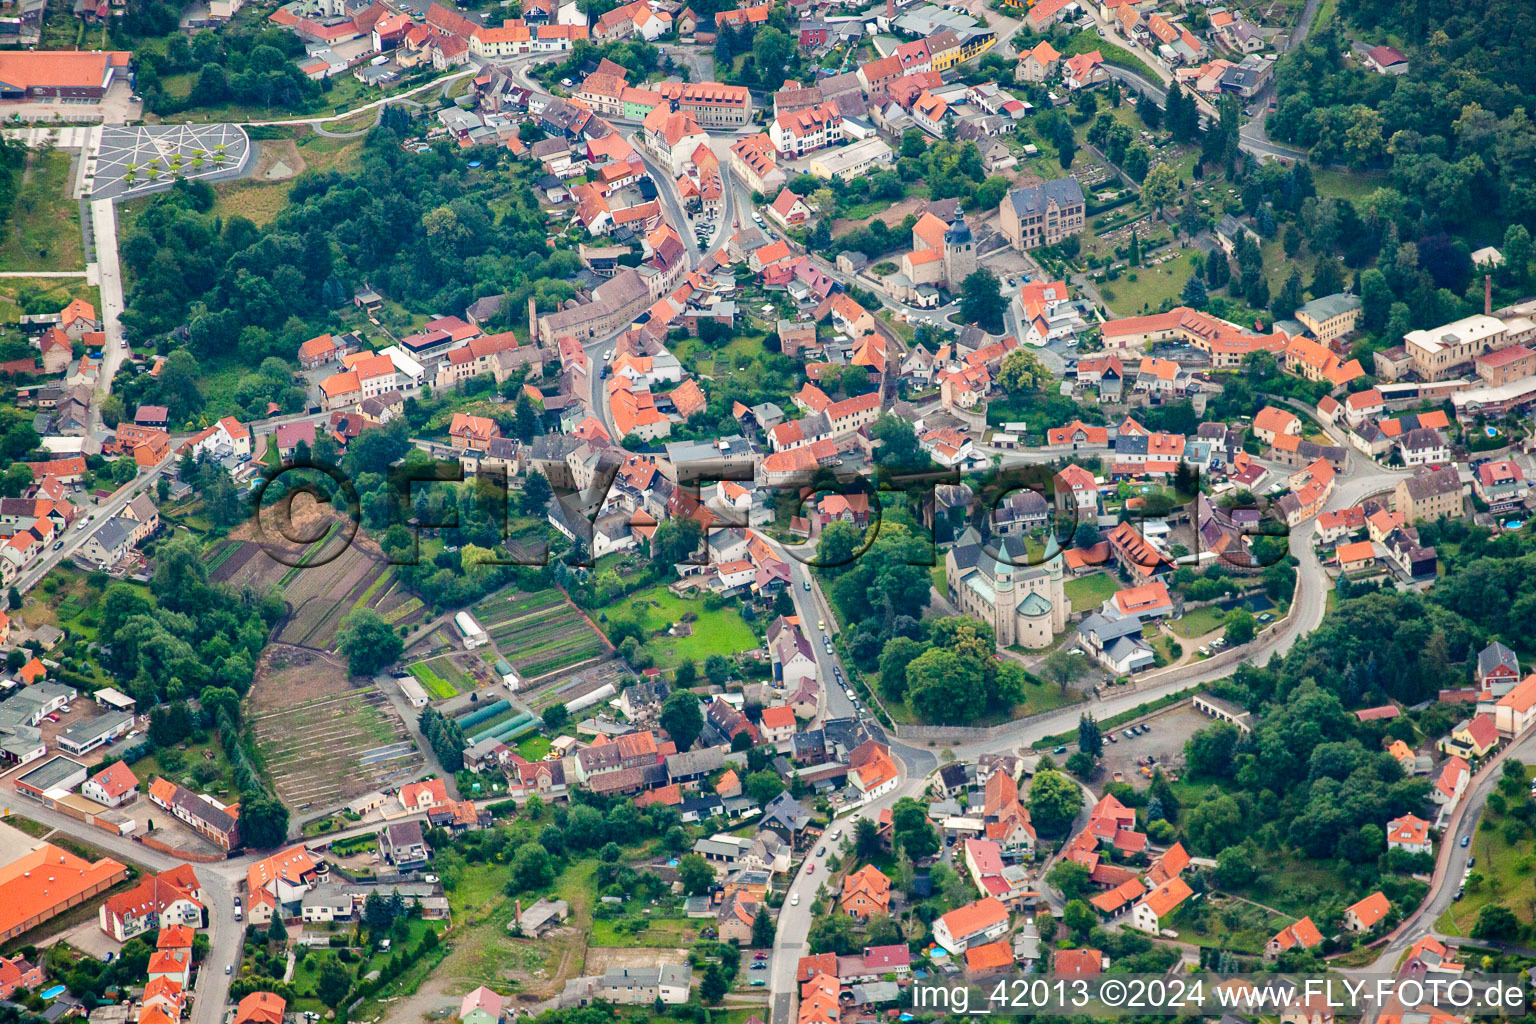 Vue aérienne de Quartier Bad Suderode in Quedlinburg dans le département Saxe-Anhalt, Allemagne